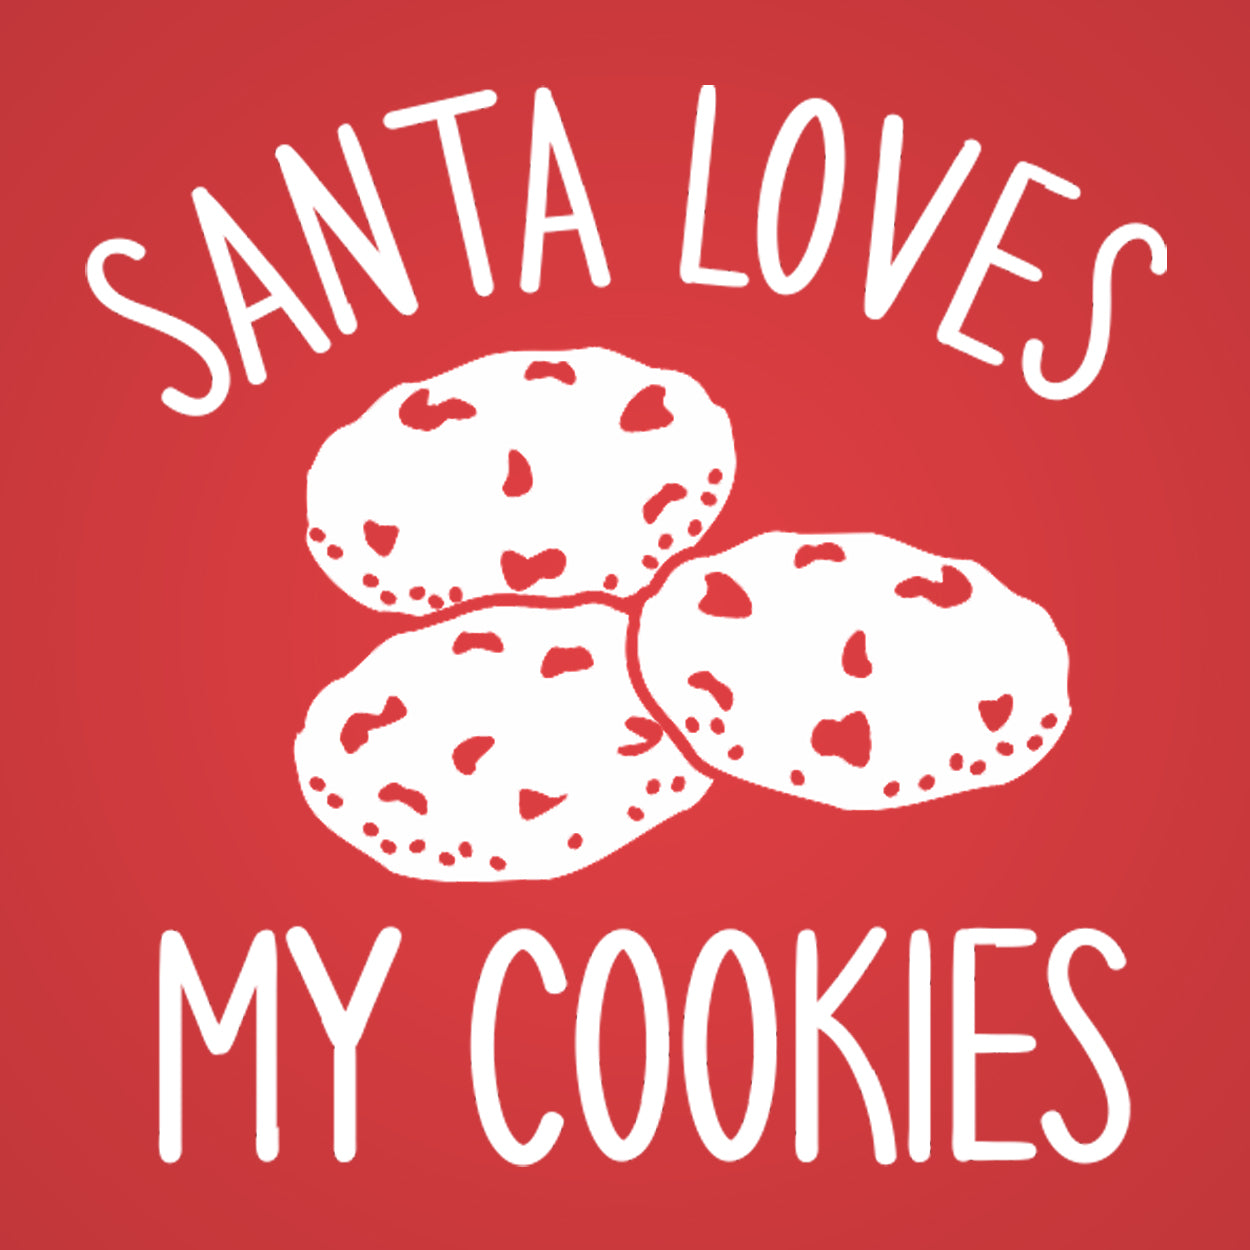 Santa Loves My Cookies Tshirt - Donkey Tees